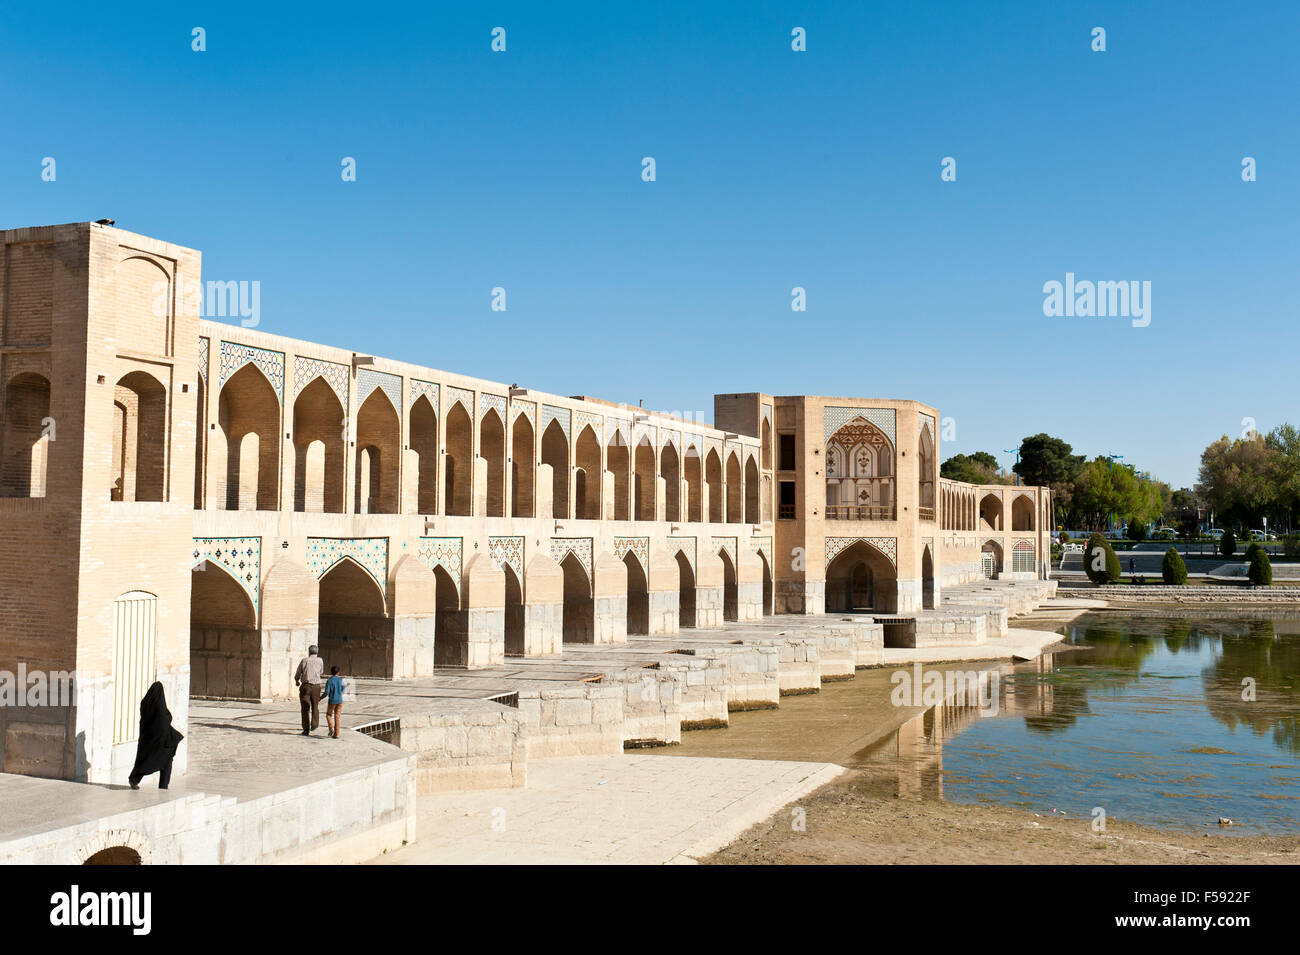 Pont Khaju sur la rivière Zayandeh, Pol-e Khajoo, Isfahan, Iran Banque D'Images